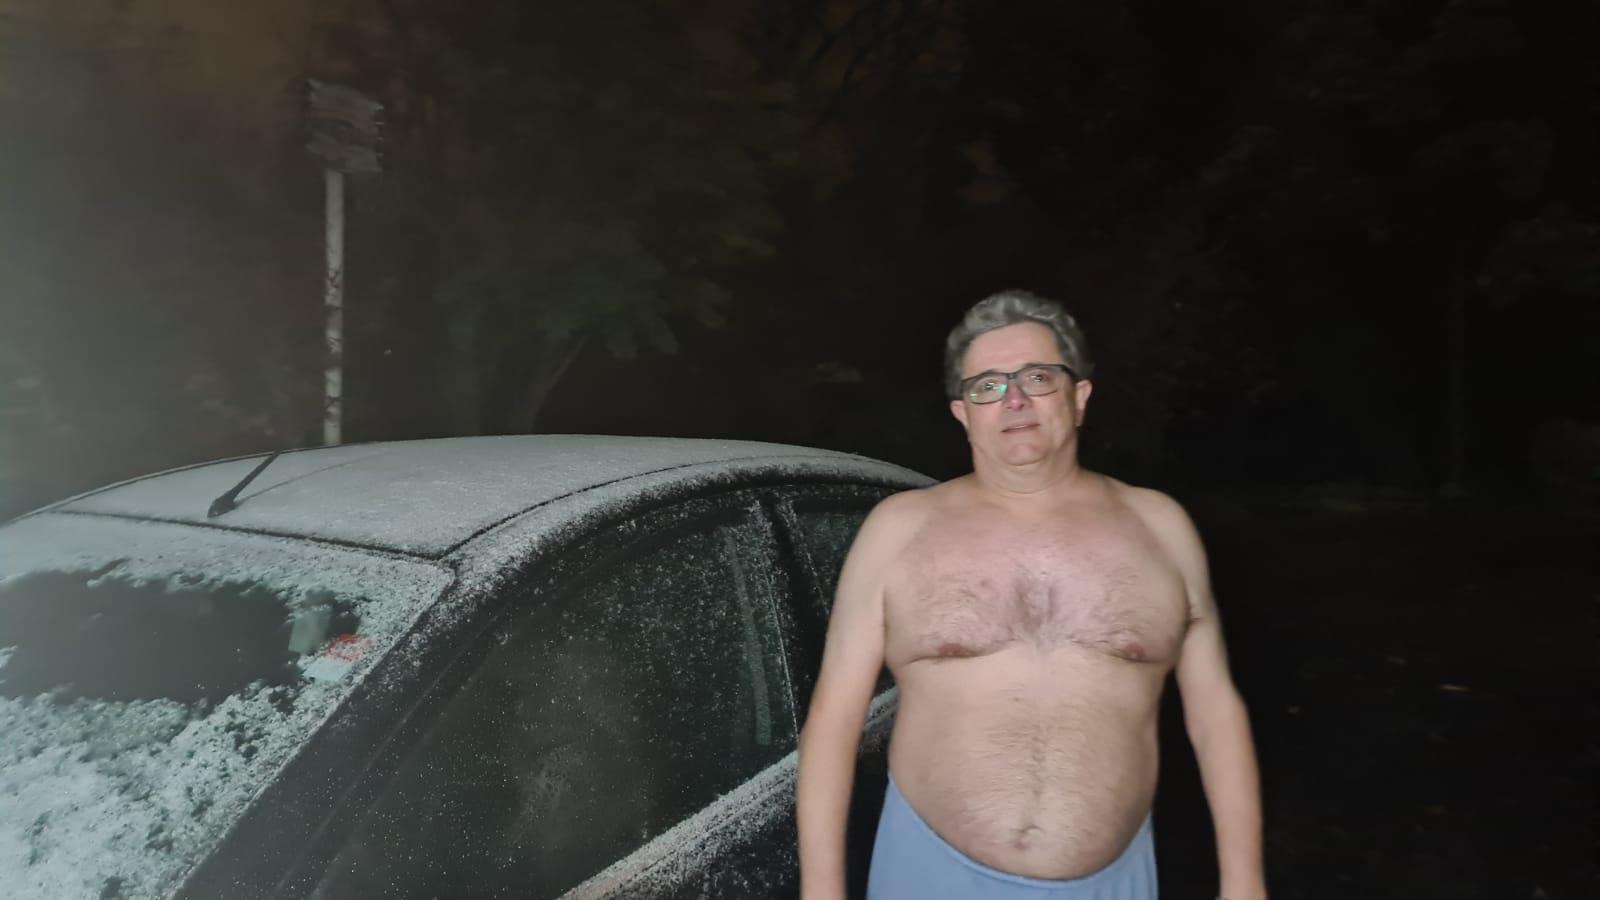 Meteorologista Ronaldo Coutinho encara frio sem camisa por boa causa a Criciúma